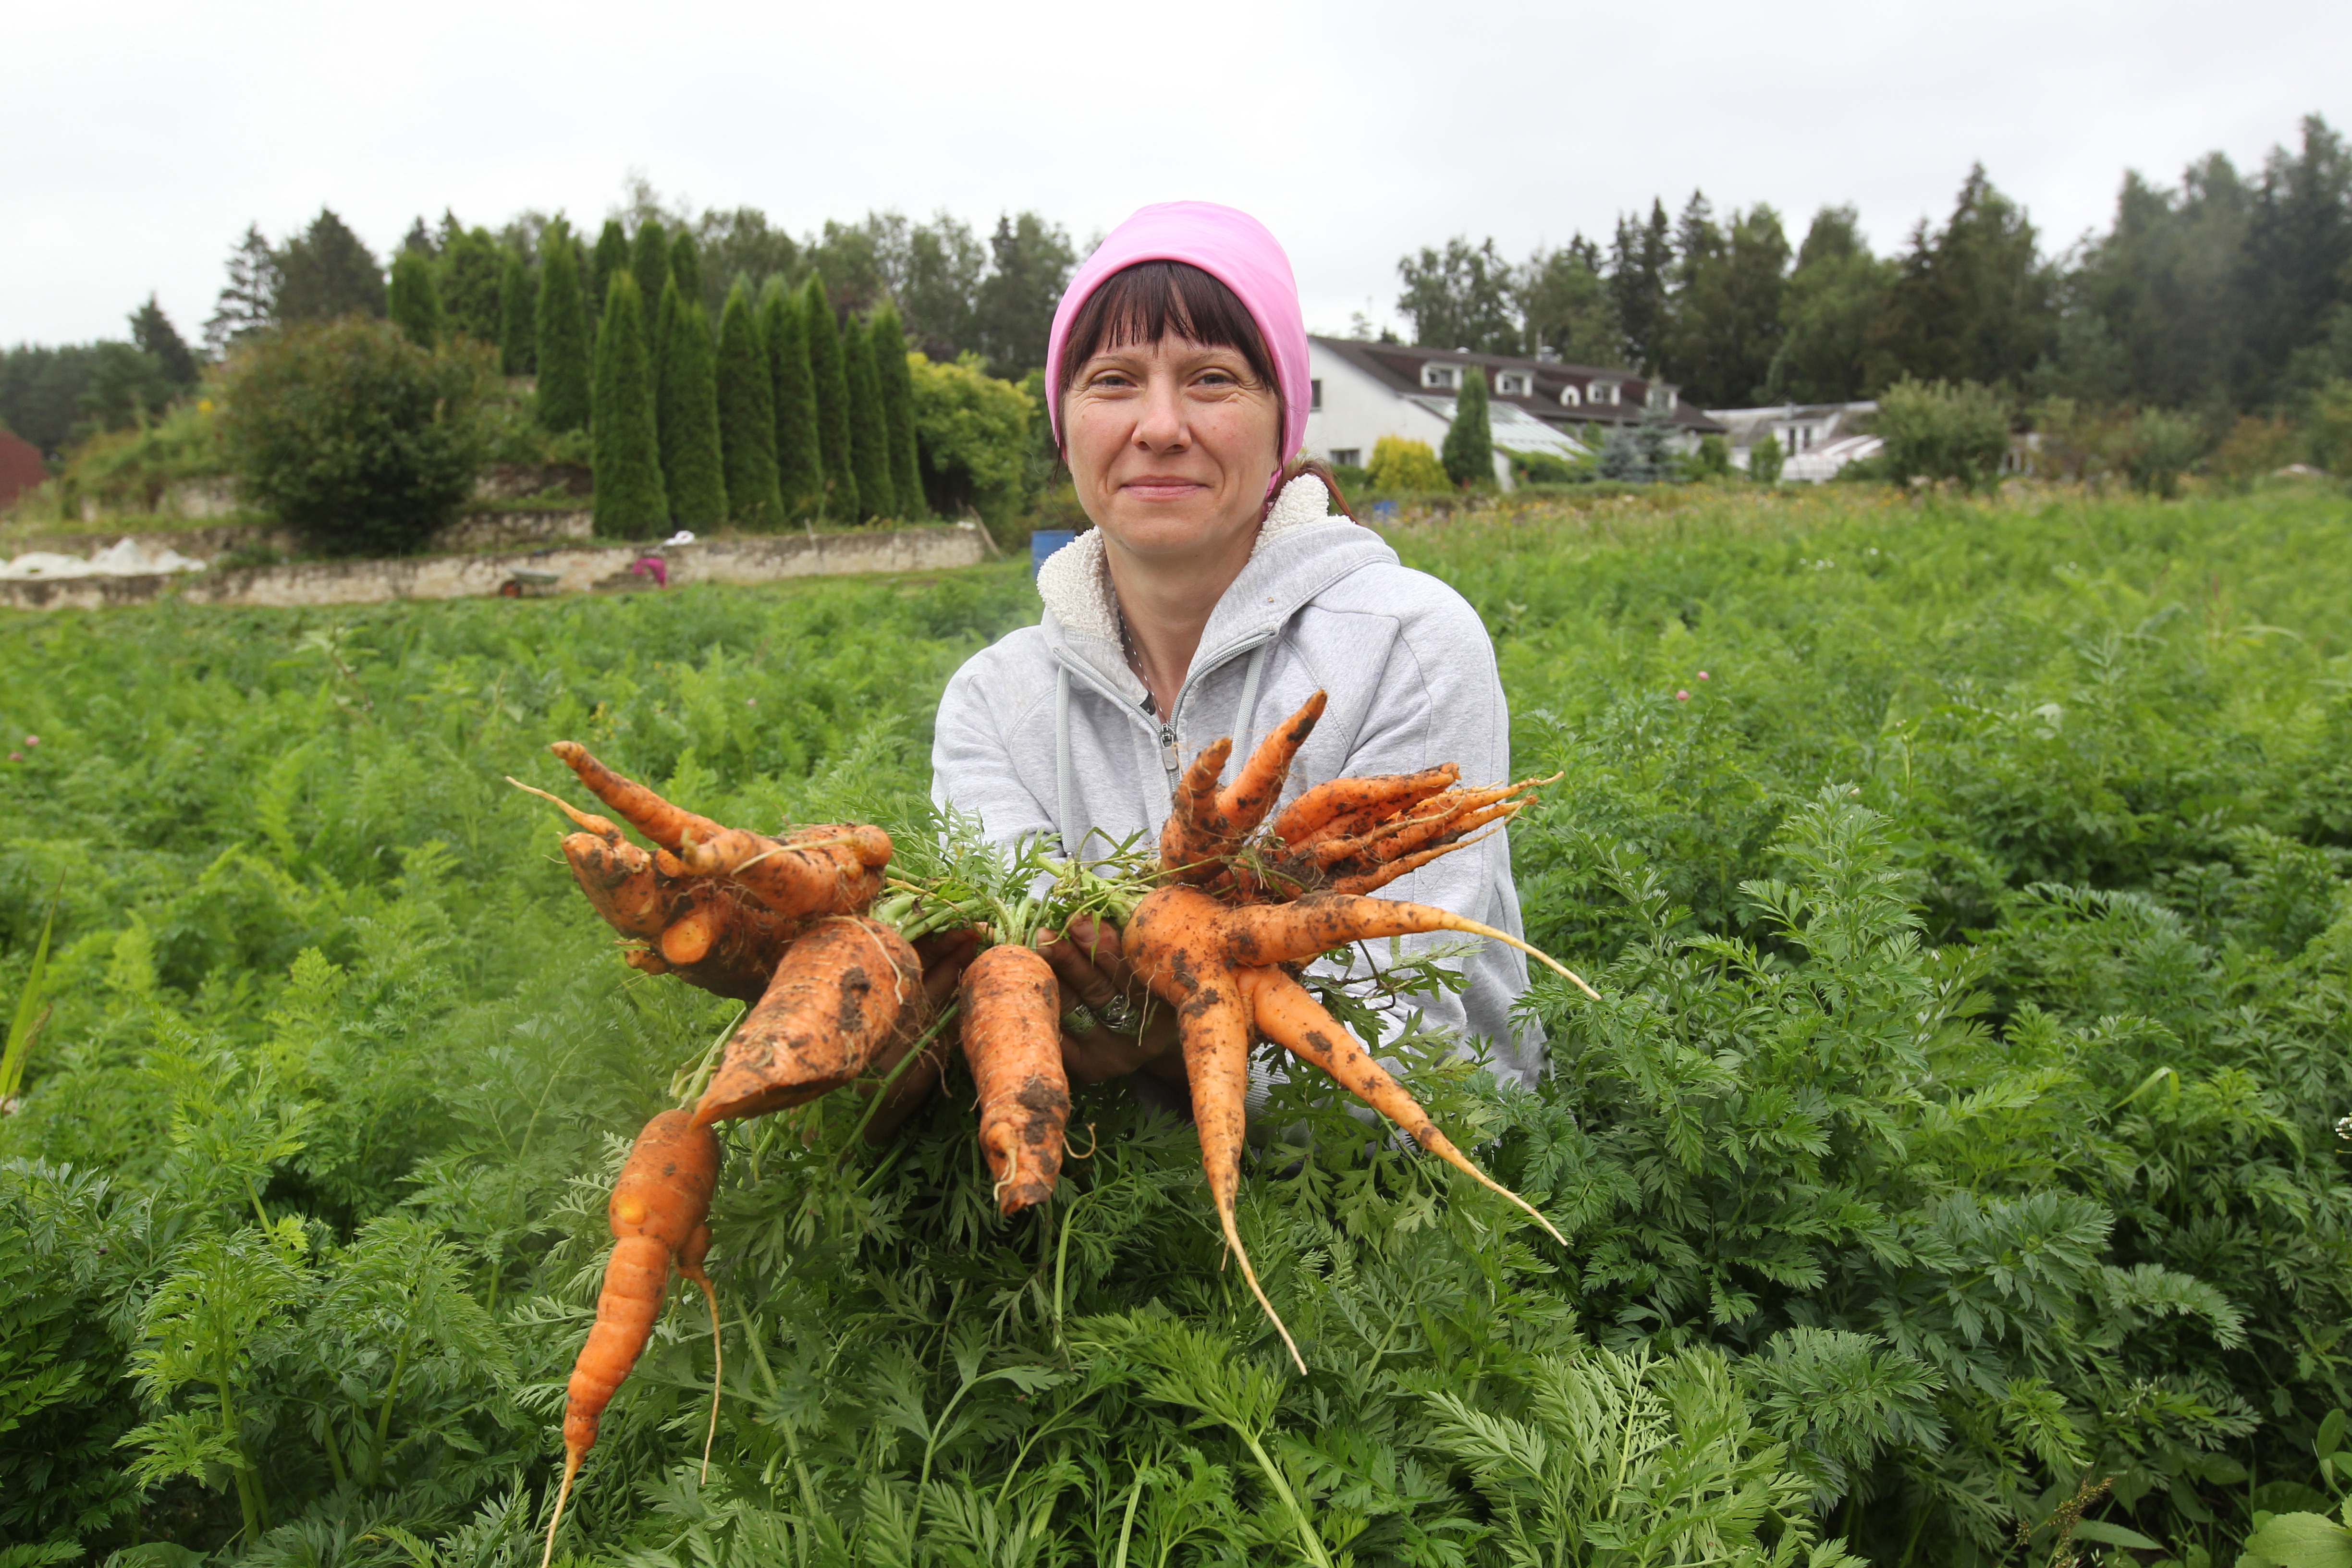 13 августа 2020 года. Марушкинское. Работник фермерского хозяйства Алексея Буркова Татьяна Тимецкая показывает, какую морковь удалось вырастить в этом году